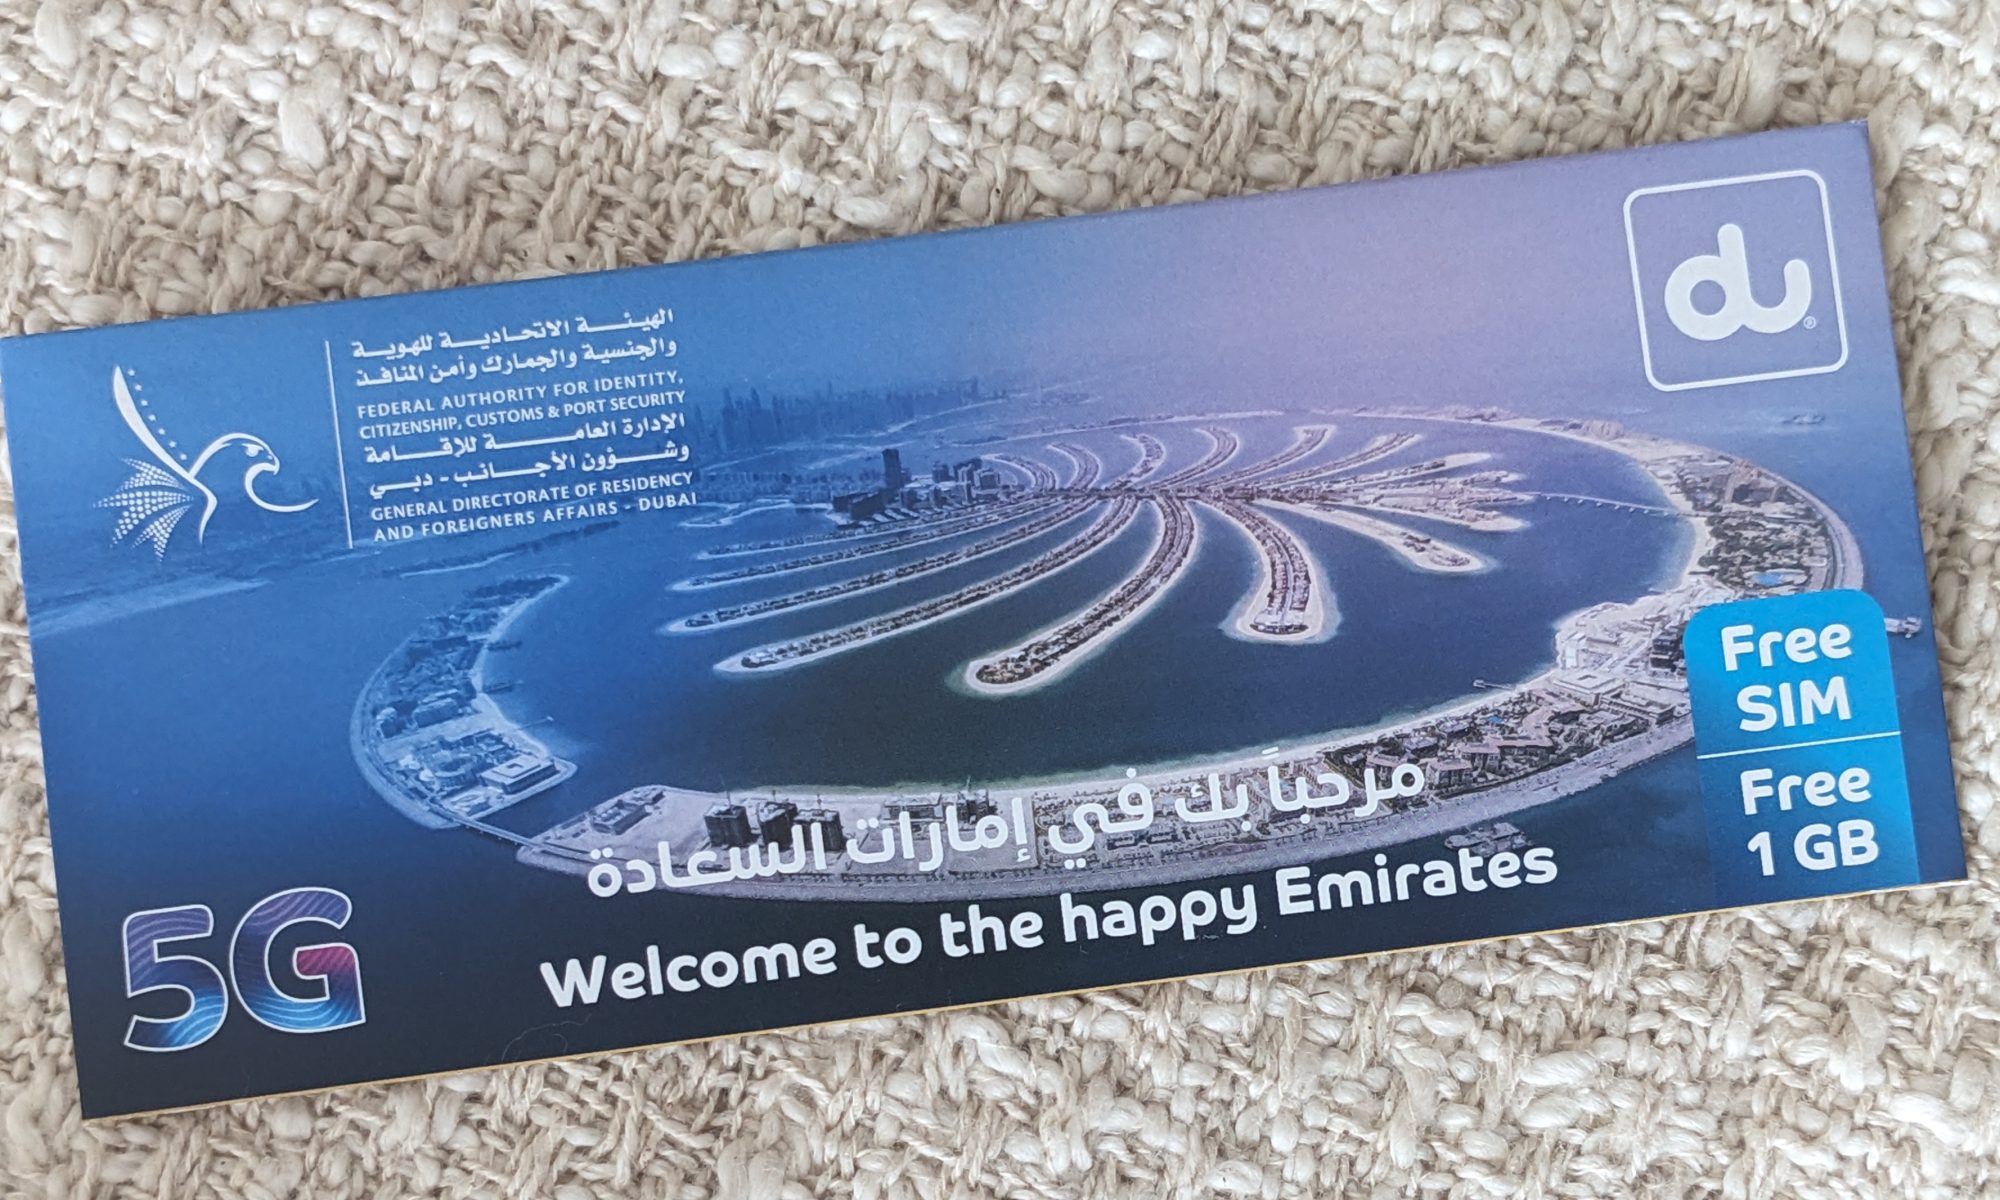 Darmowa karta SIM dla podróżnych przybywających do Zjednoczonych Emiratów Arabskich - 1 GB na jeden dzień od sieci du